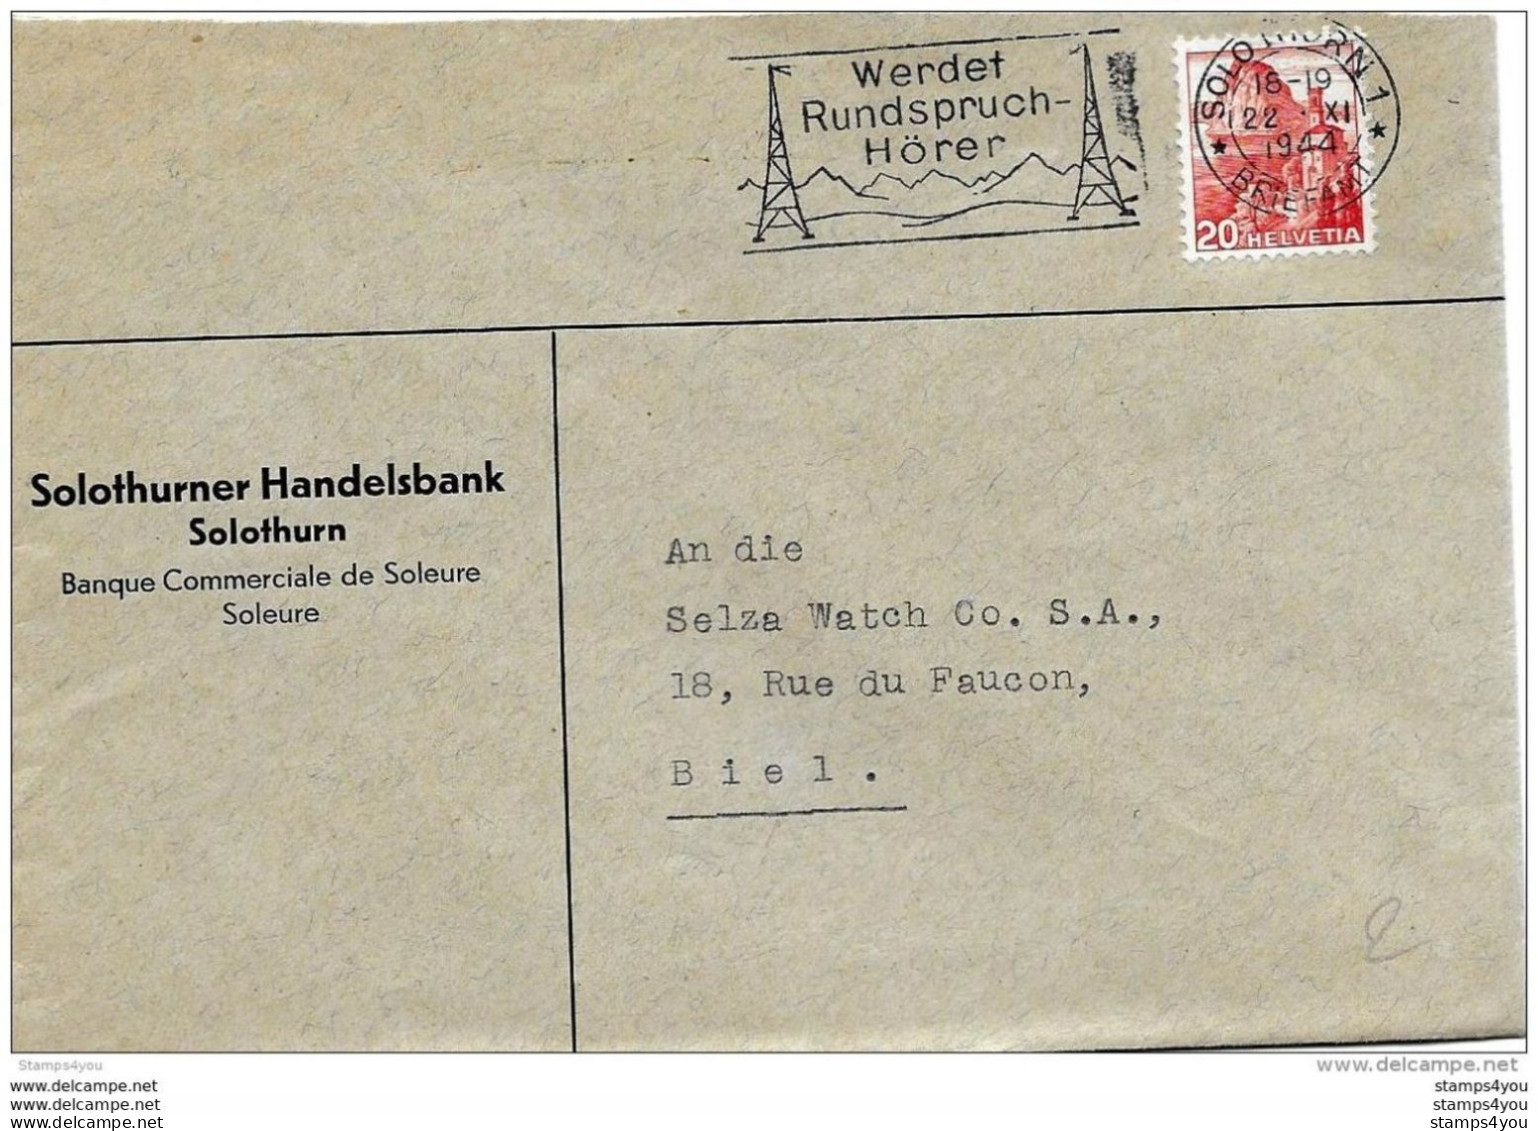 76 - 32 - Enveloppe Avec Oblit Mécanique "Werdet Rundspruch Hörer" 1944 - Storia Postale